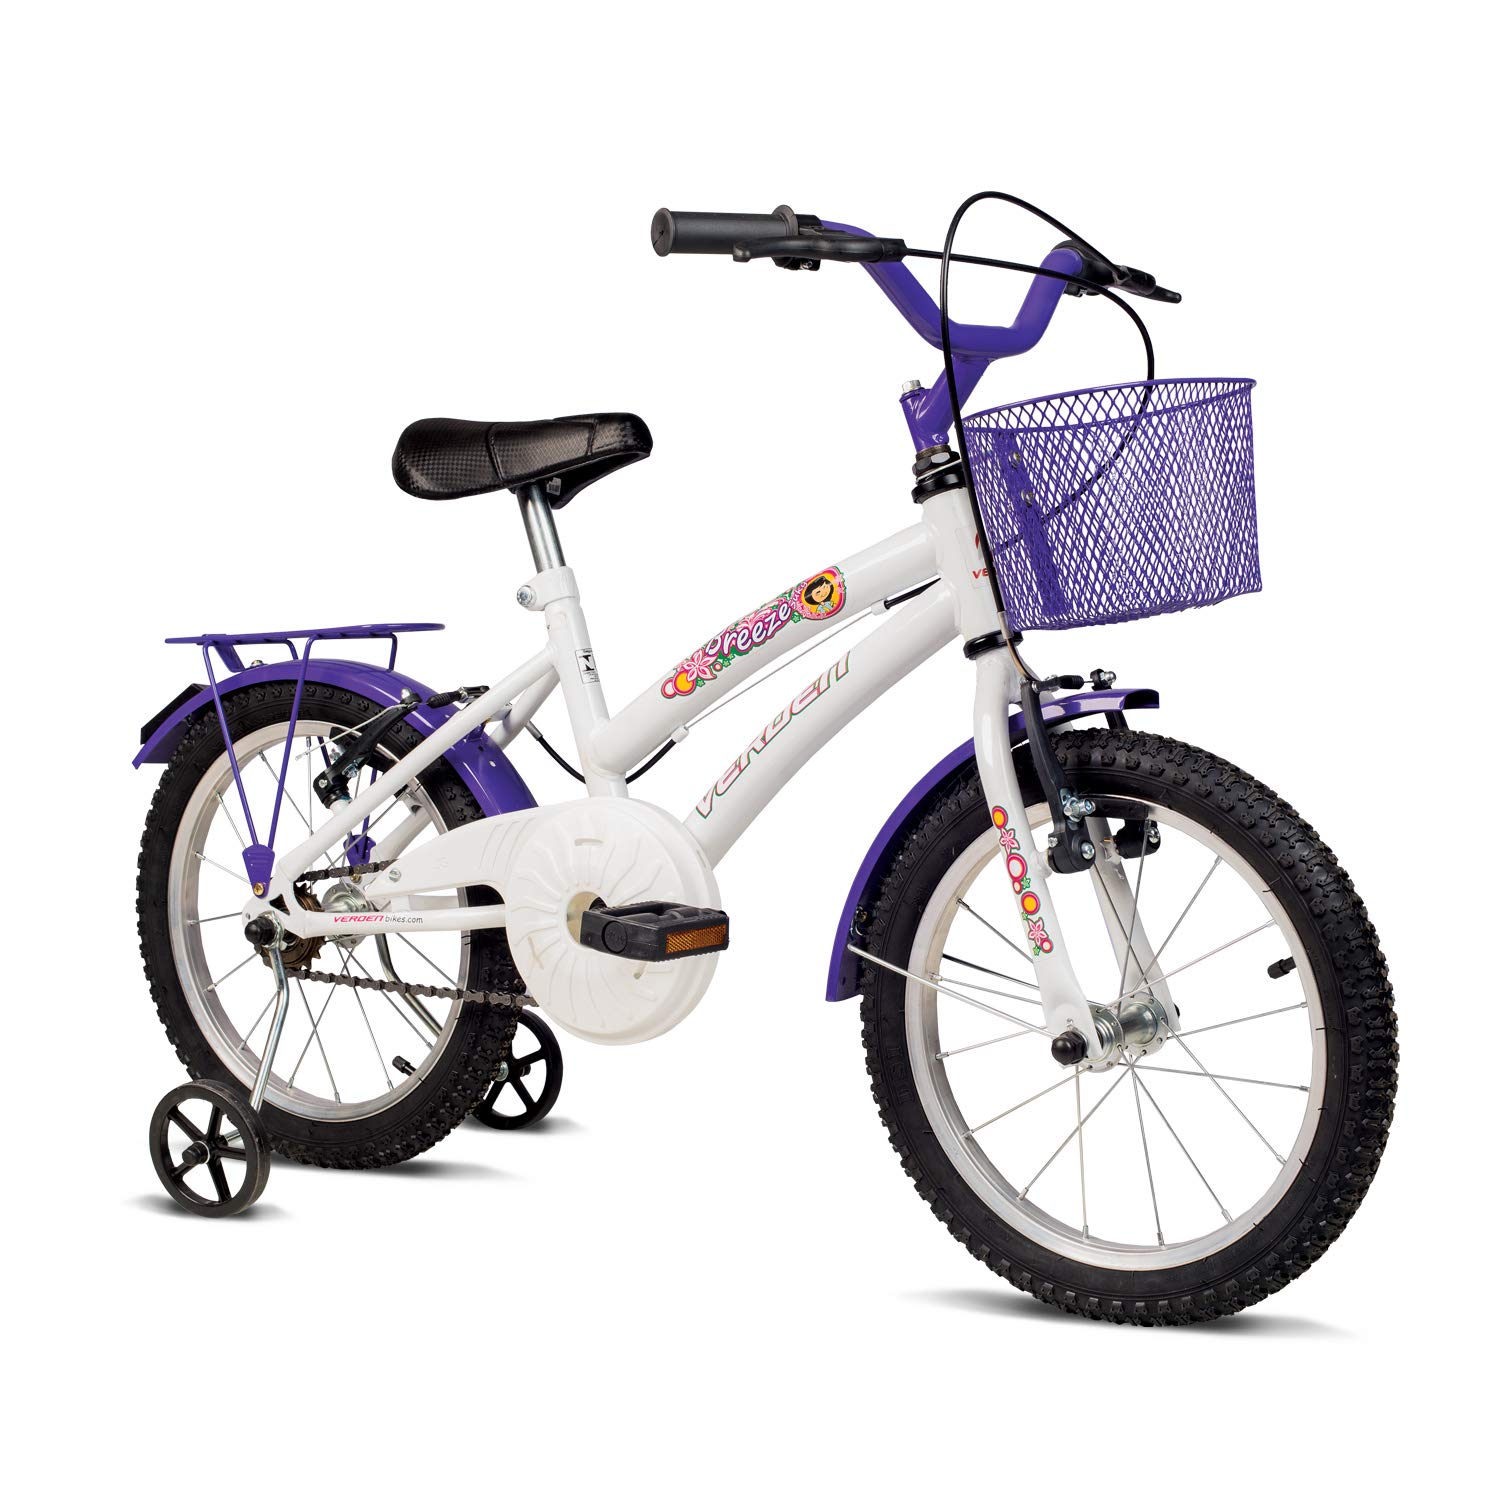 Bicicleta Infantil Verden Breeze - Aro 16 com cestinha e bagageiro Branco/ Lilás